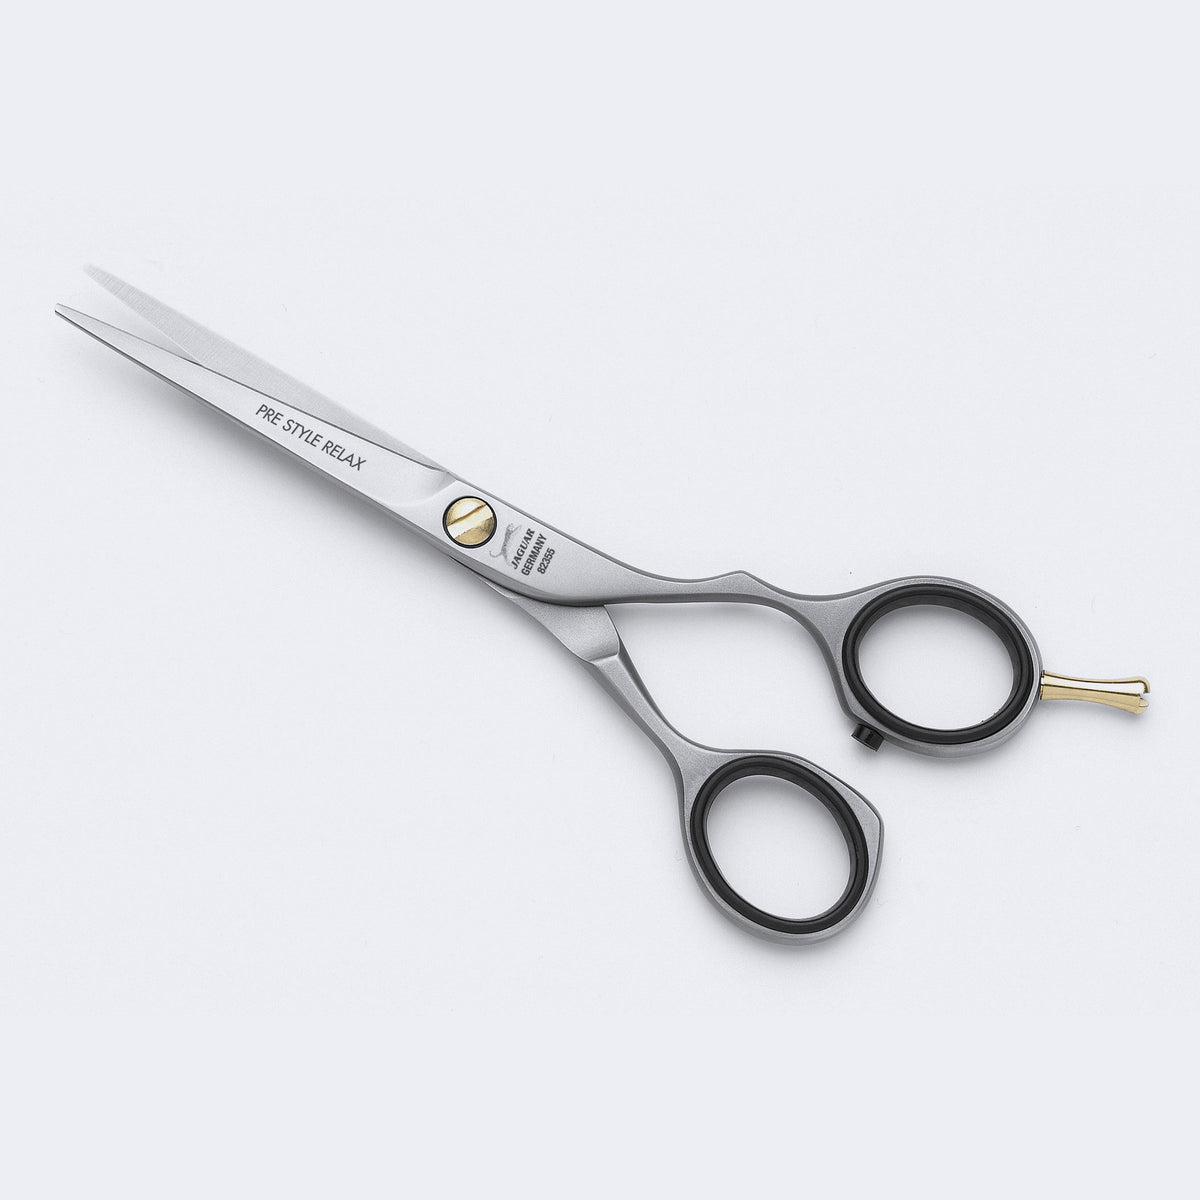 6" Relax scissors, offset handles